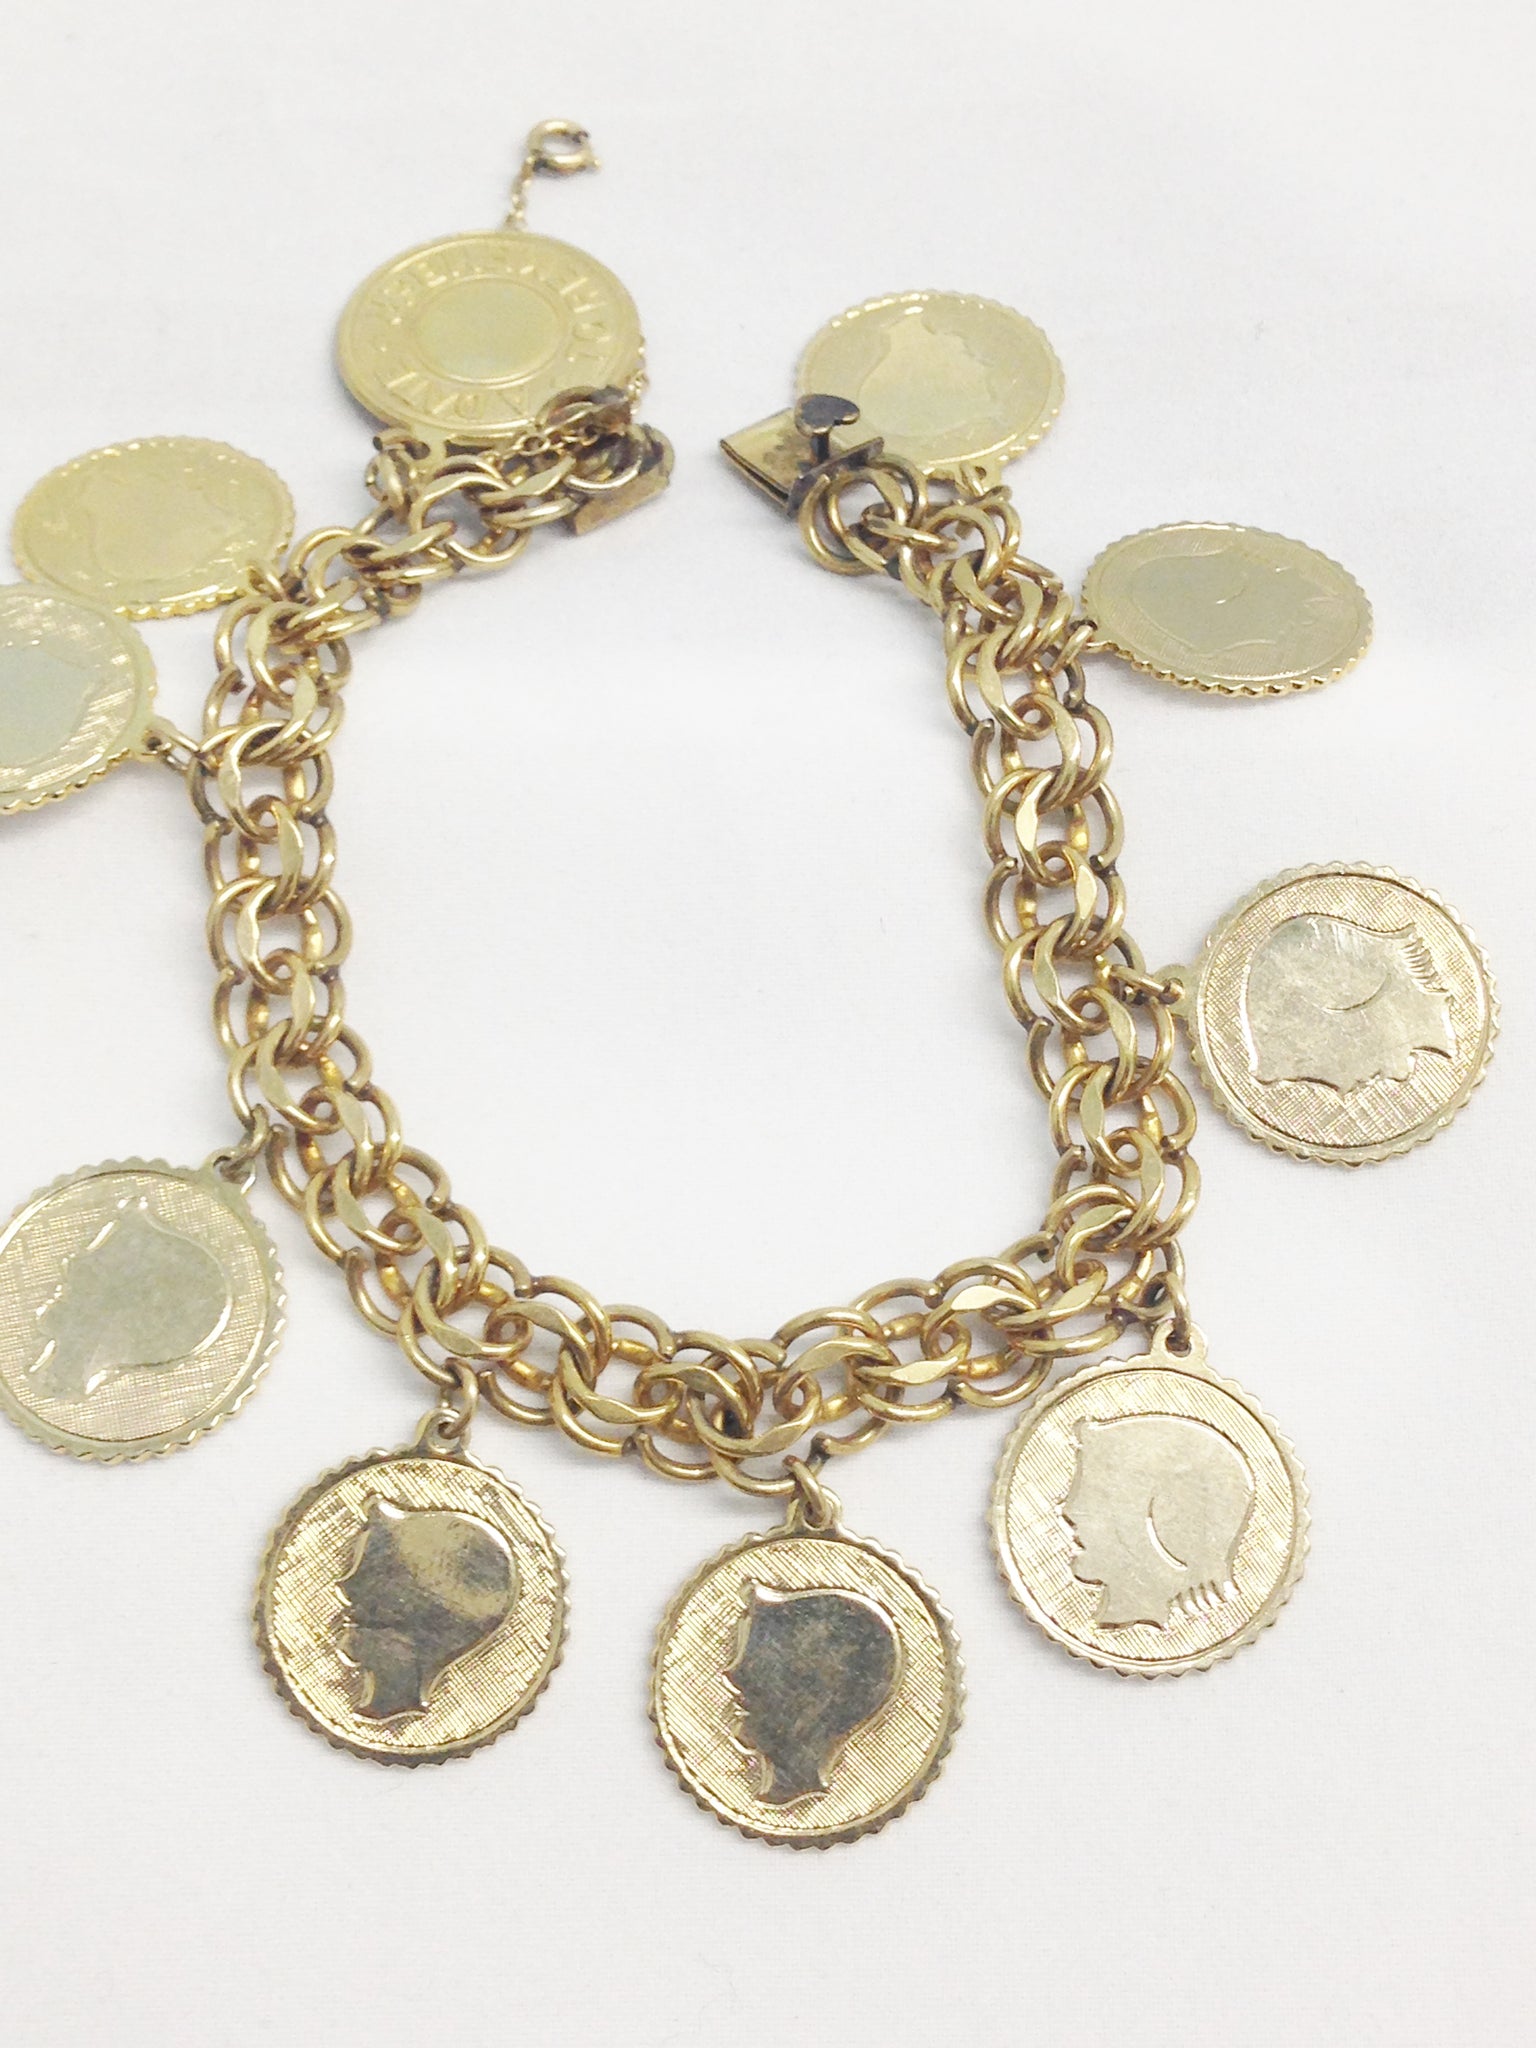 Elco Quality Jewelry 1/20 12K Gold Filled Charm Bracelet W/ Silhouette ...